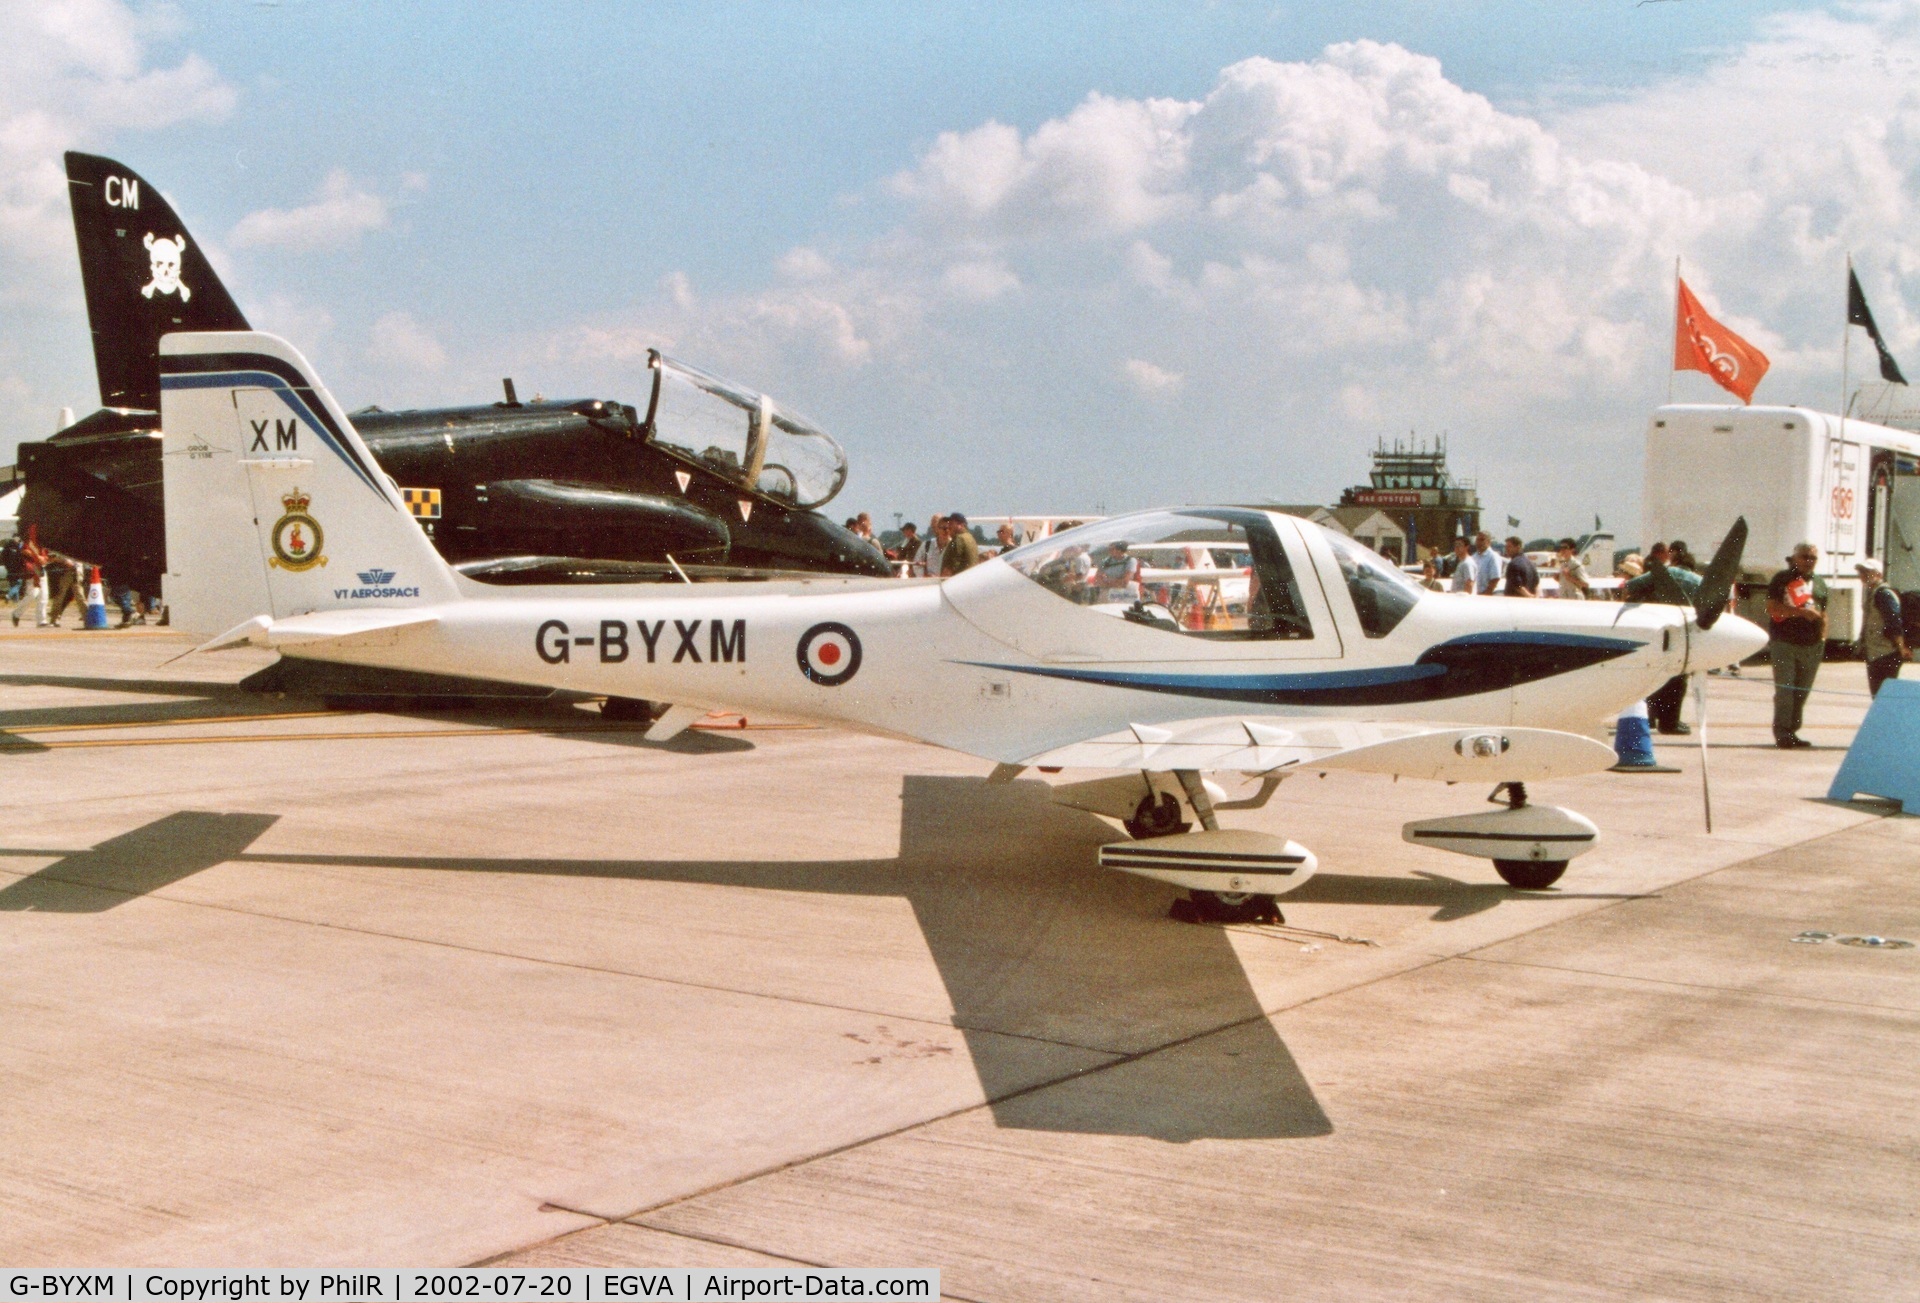 G-BYXM, 2001 Grob G-115E Tutor T1 C/N 82173/E, G-BYXM Grob GR115E Tutor RAF RIAT